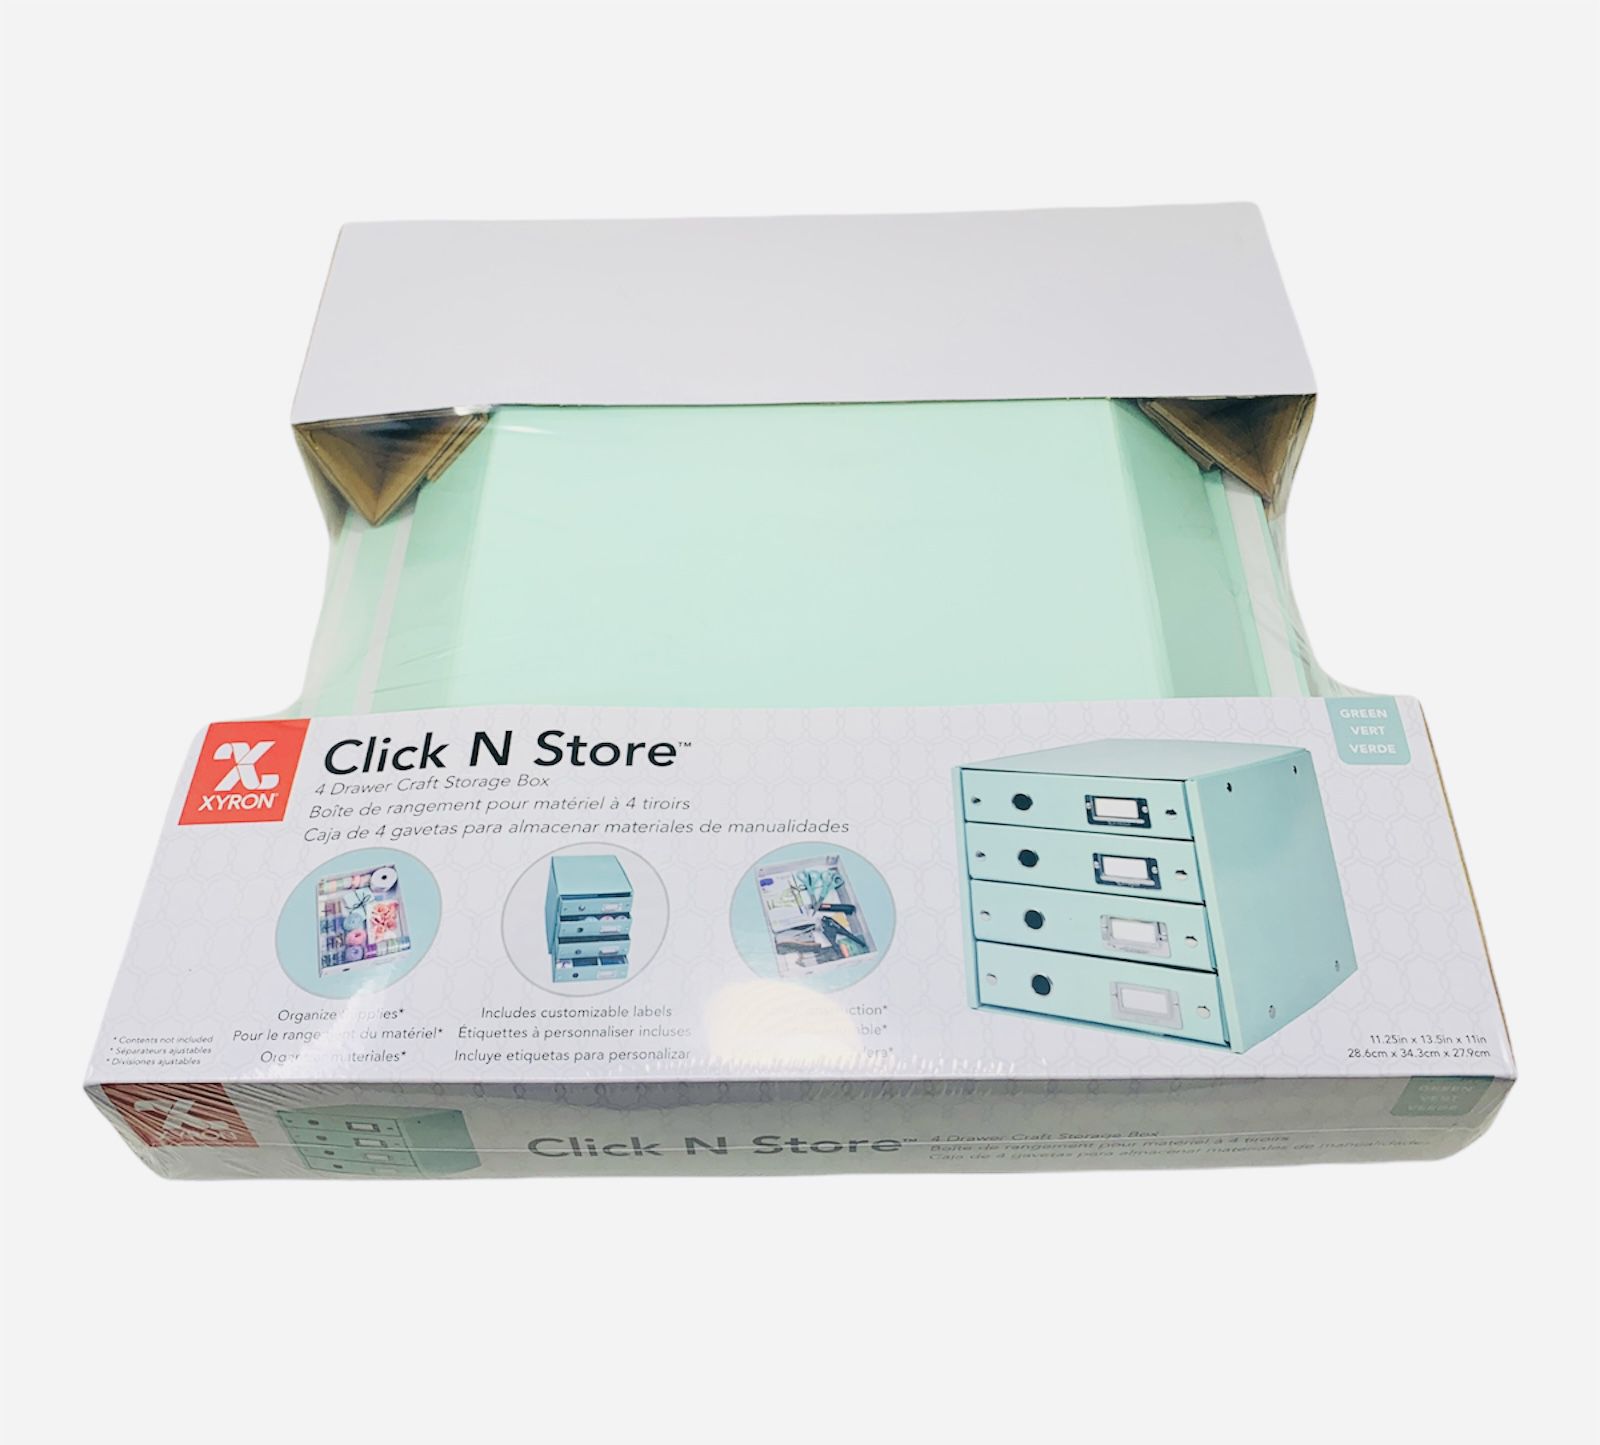 Xyron Click N Store 4-Drawer Craft Storage Boxes, 11-1/4" x 13-1/2" x 11", Mint